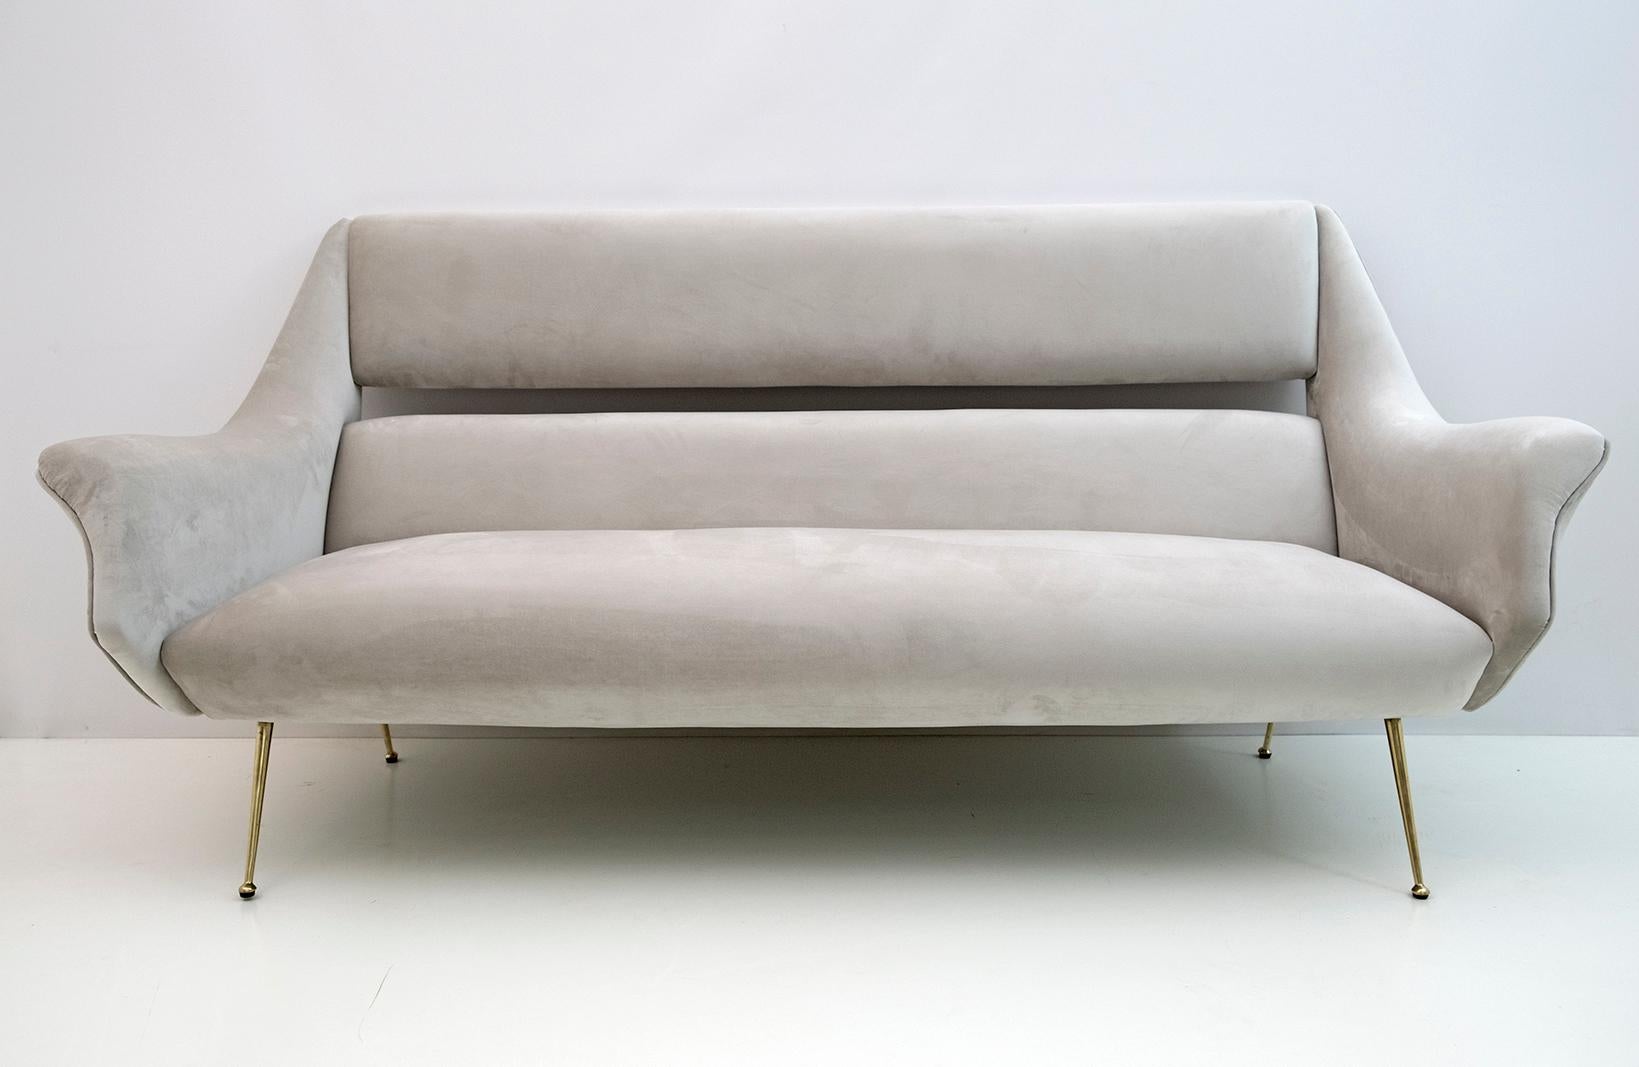 Canapé conçu par Gigi Radice pour Minotti. Réalisé avec une structure en bois massif, un revêtement en velours gris clair et des pieds en laiton poli. Le canapé est authentique, seule la tapisserie a été remplacée.